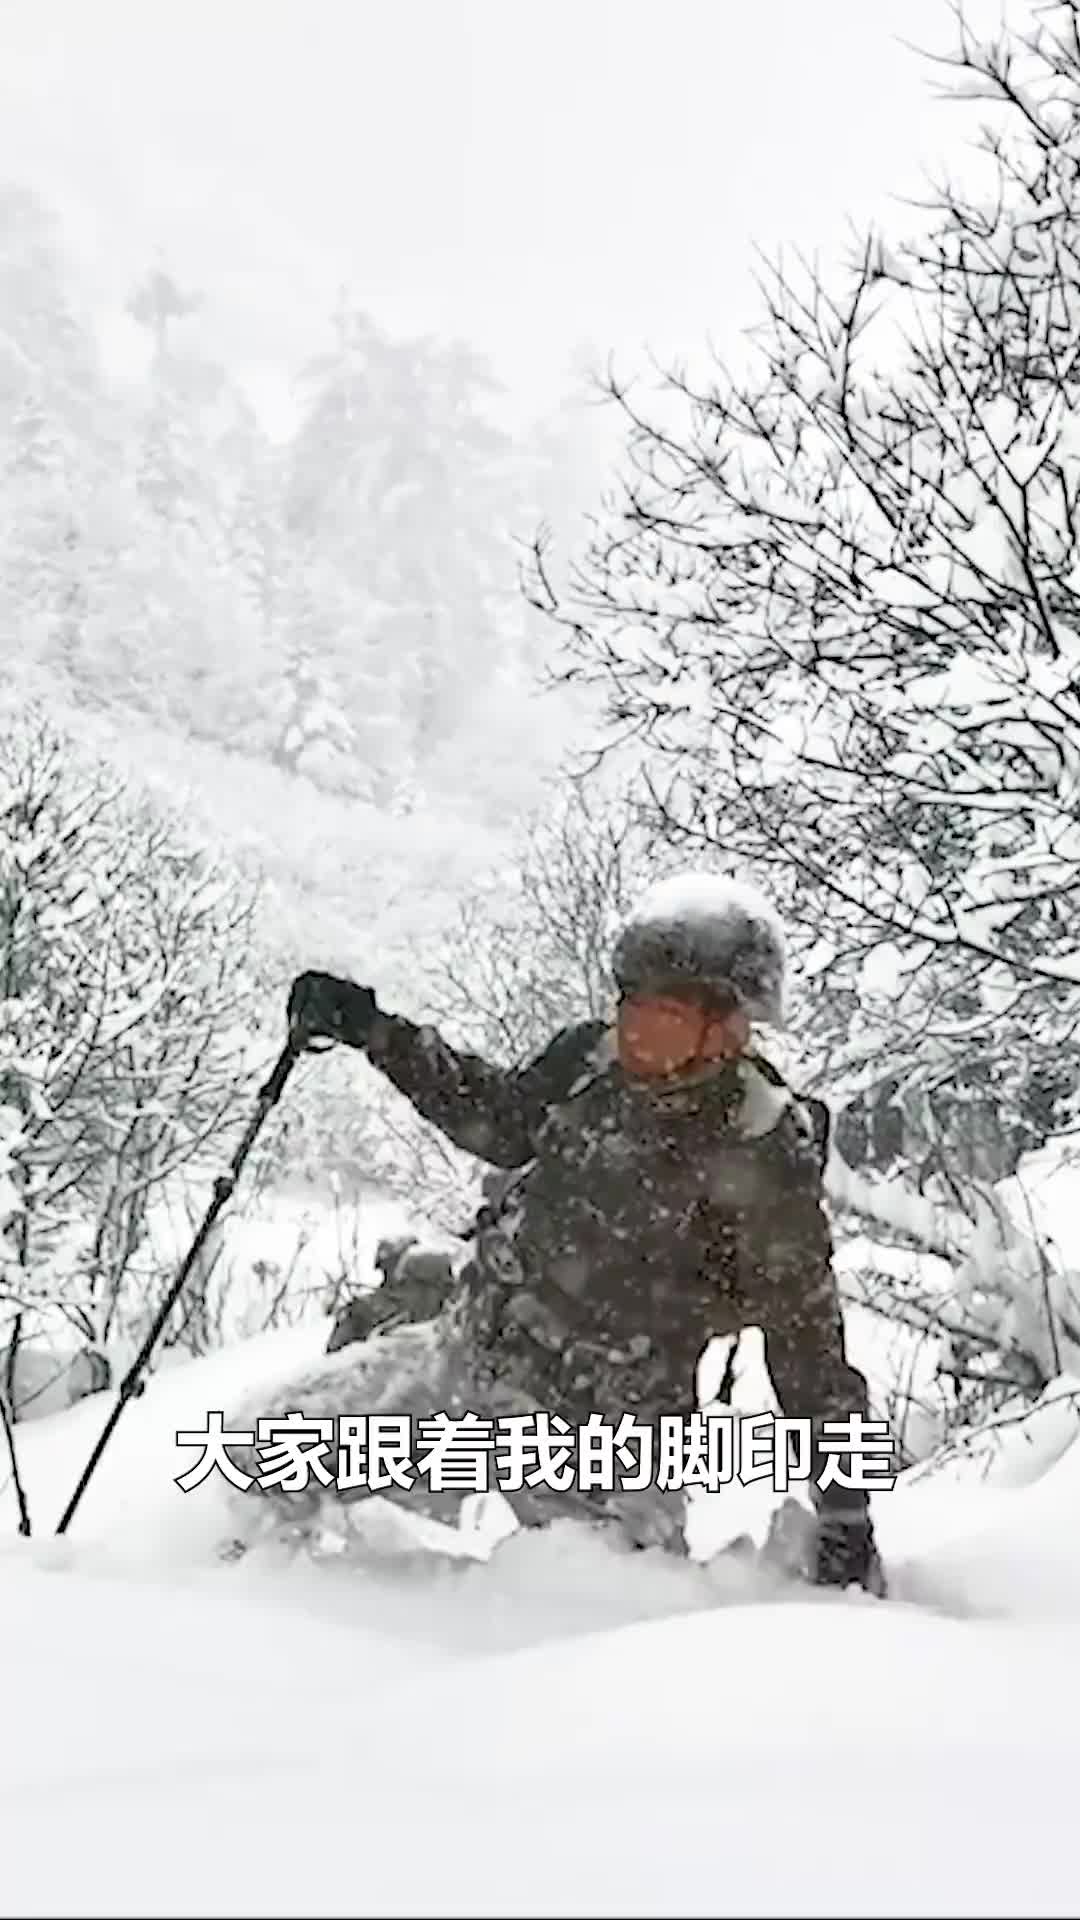 风雪中坚定的前行是边防战士对祖国最深的爱